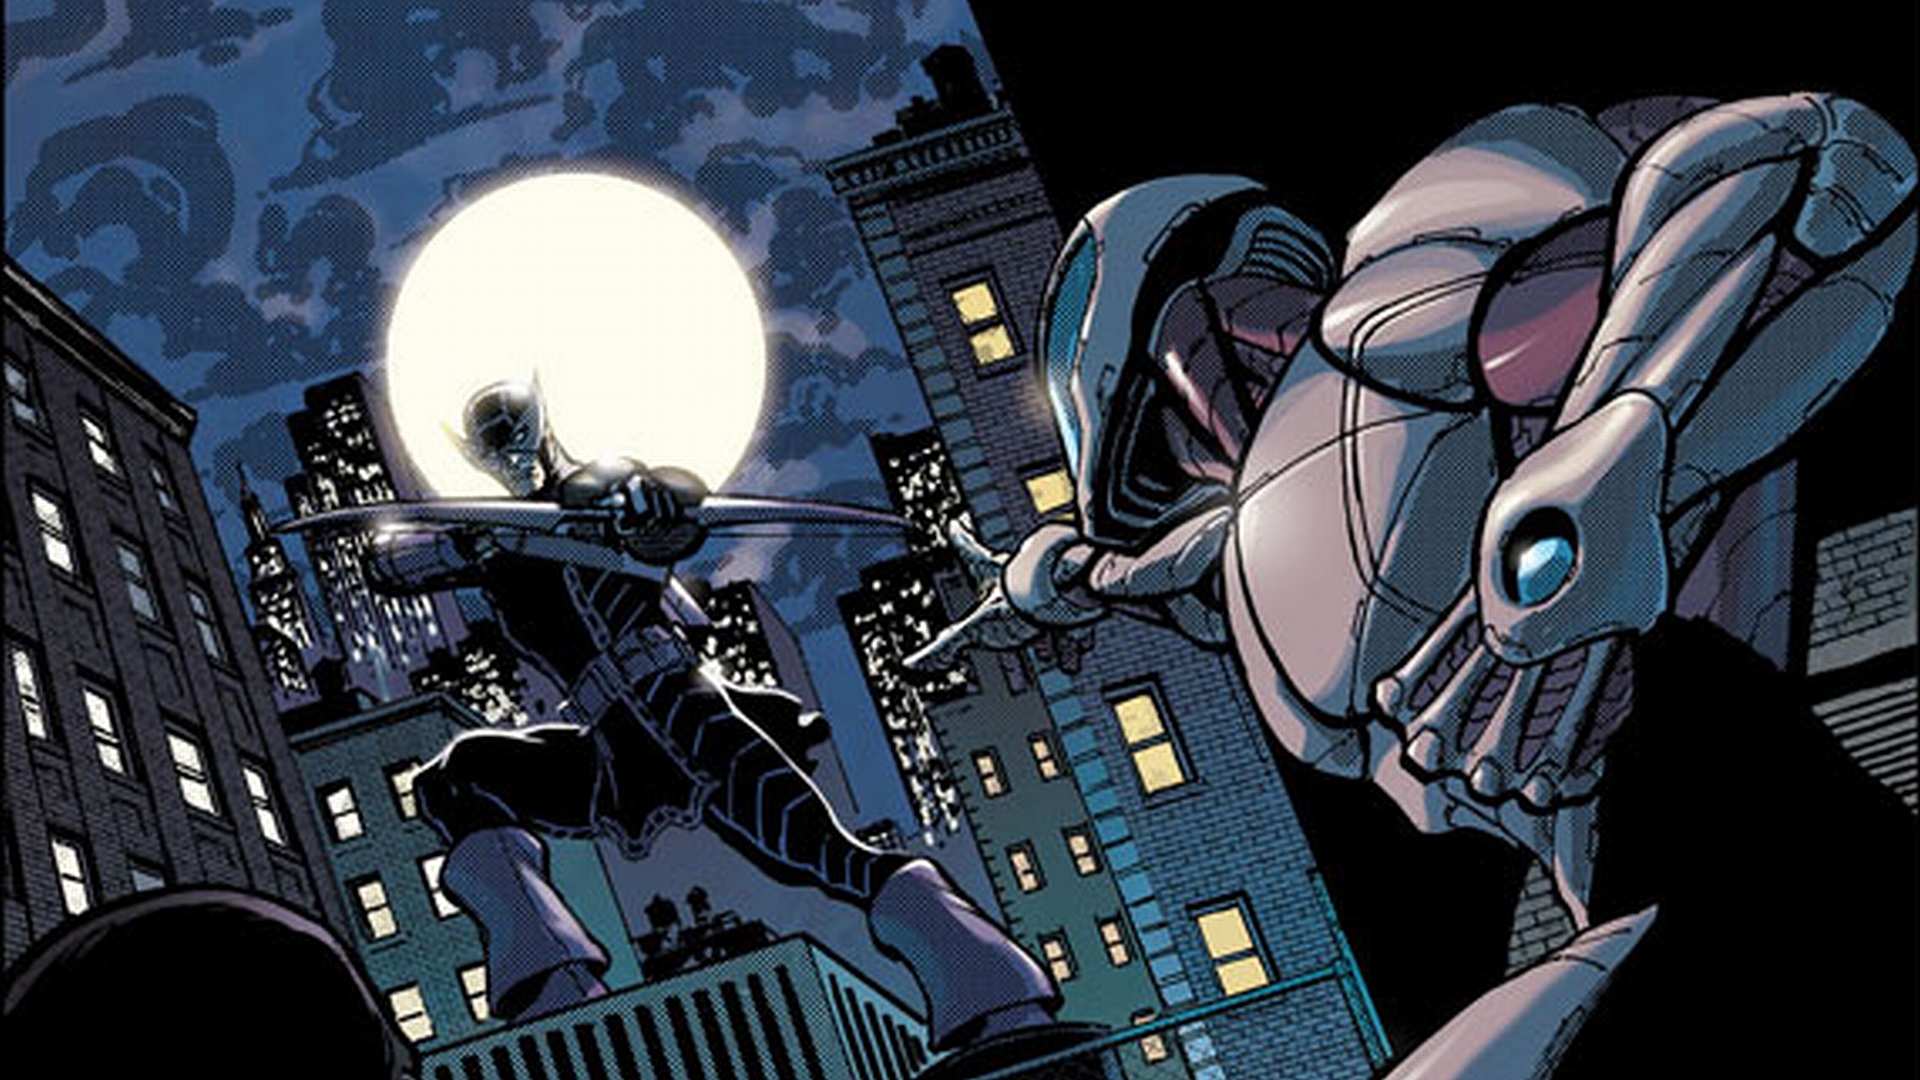 Hawkeye from the Avengers in a dynamic comic-style desktop wallpaper.